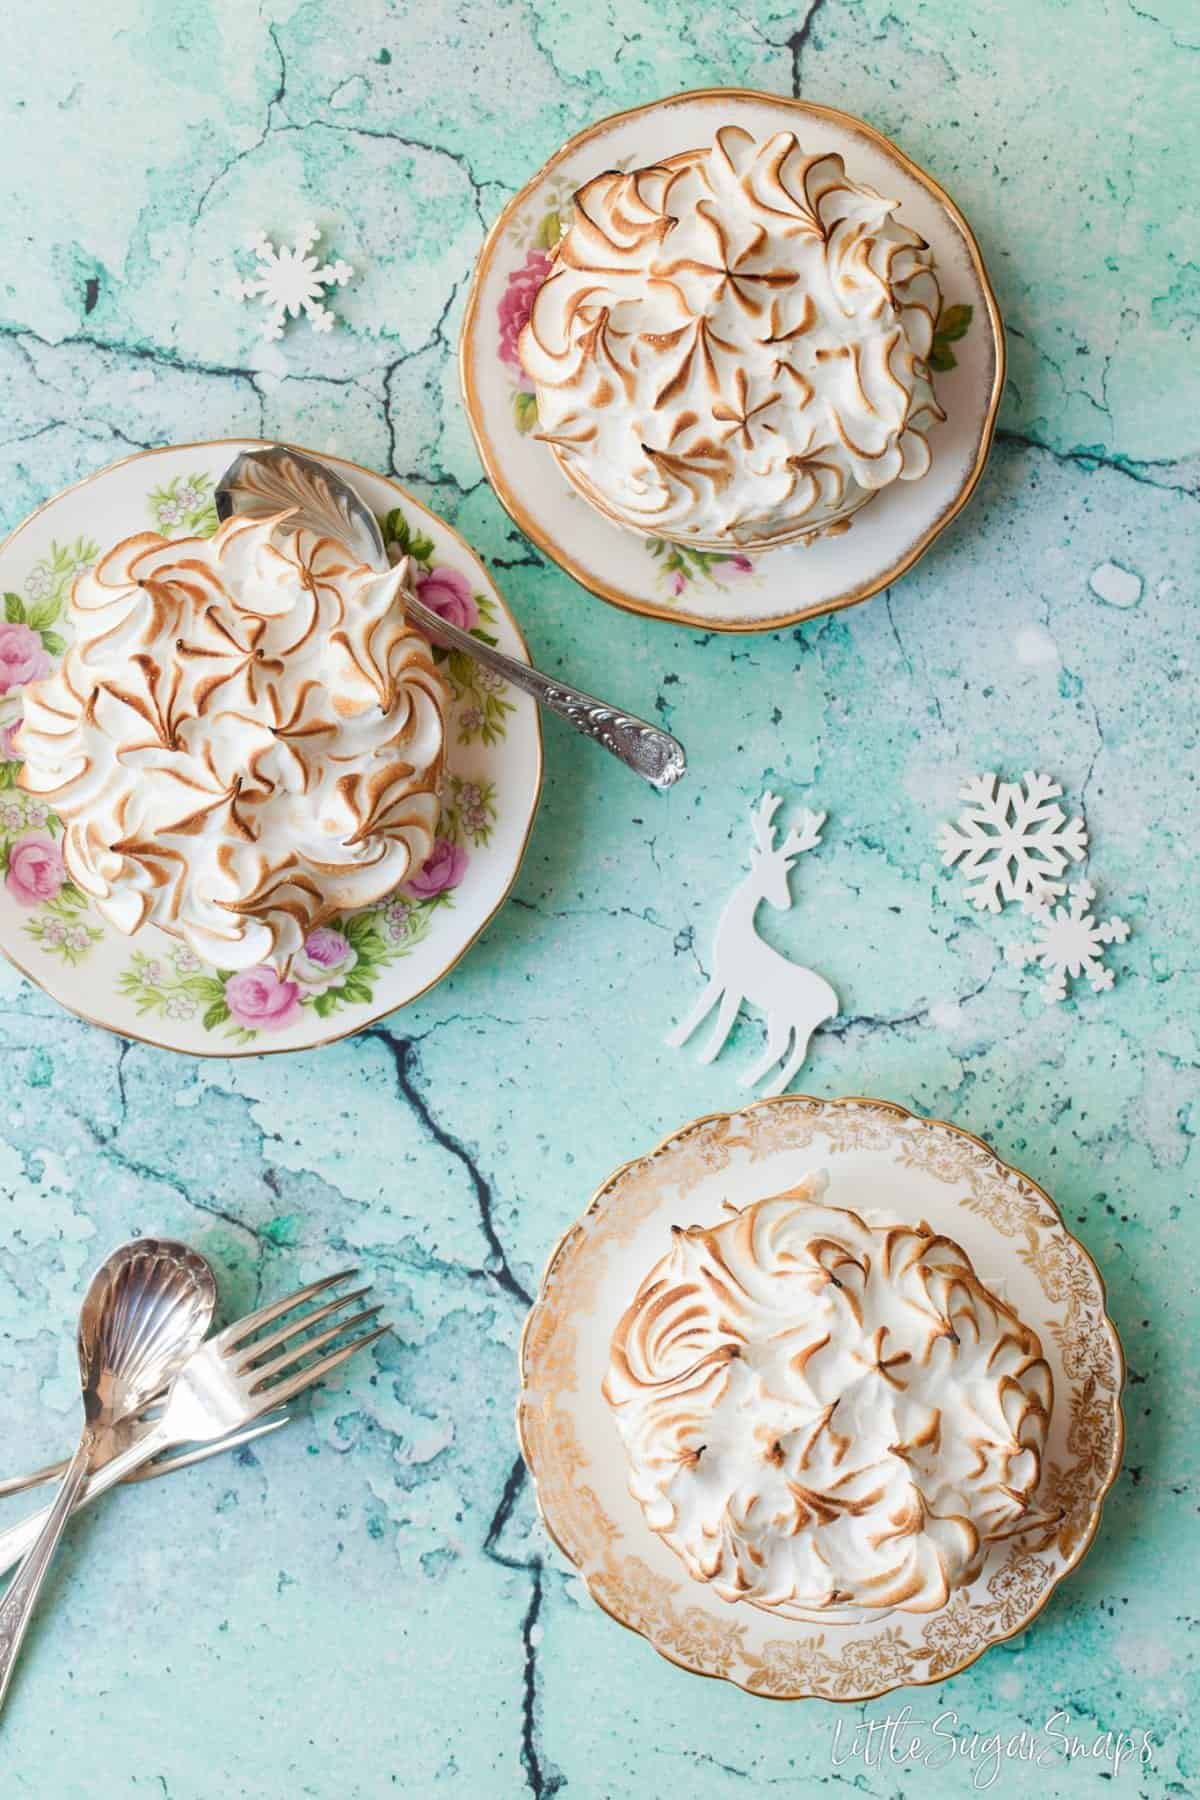 Three individual Baked Alaska desserts on vintage plates.